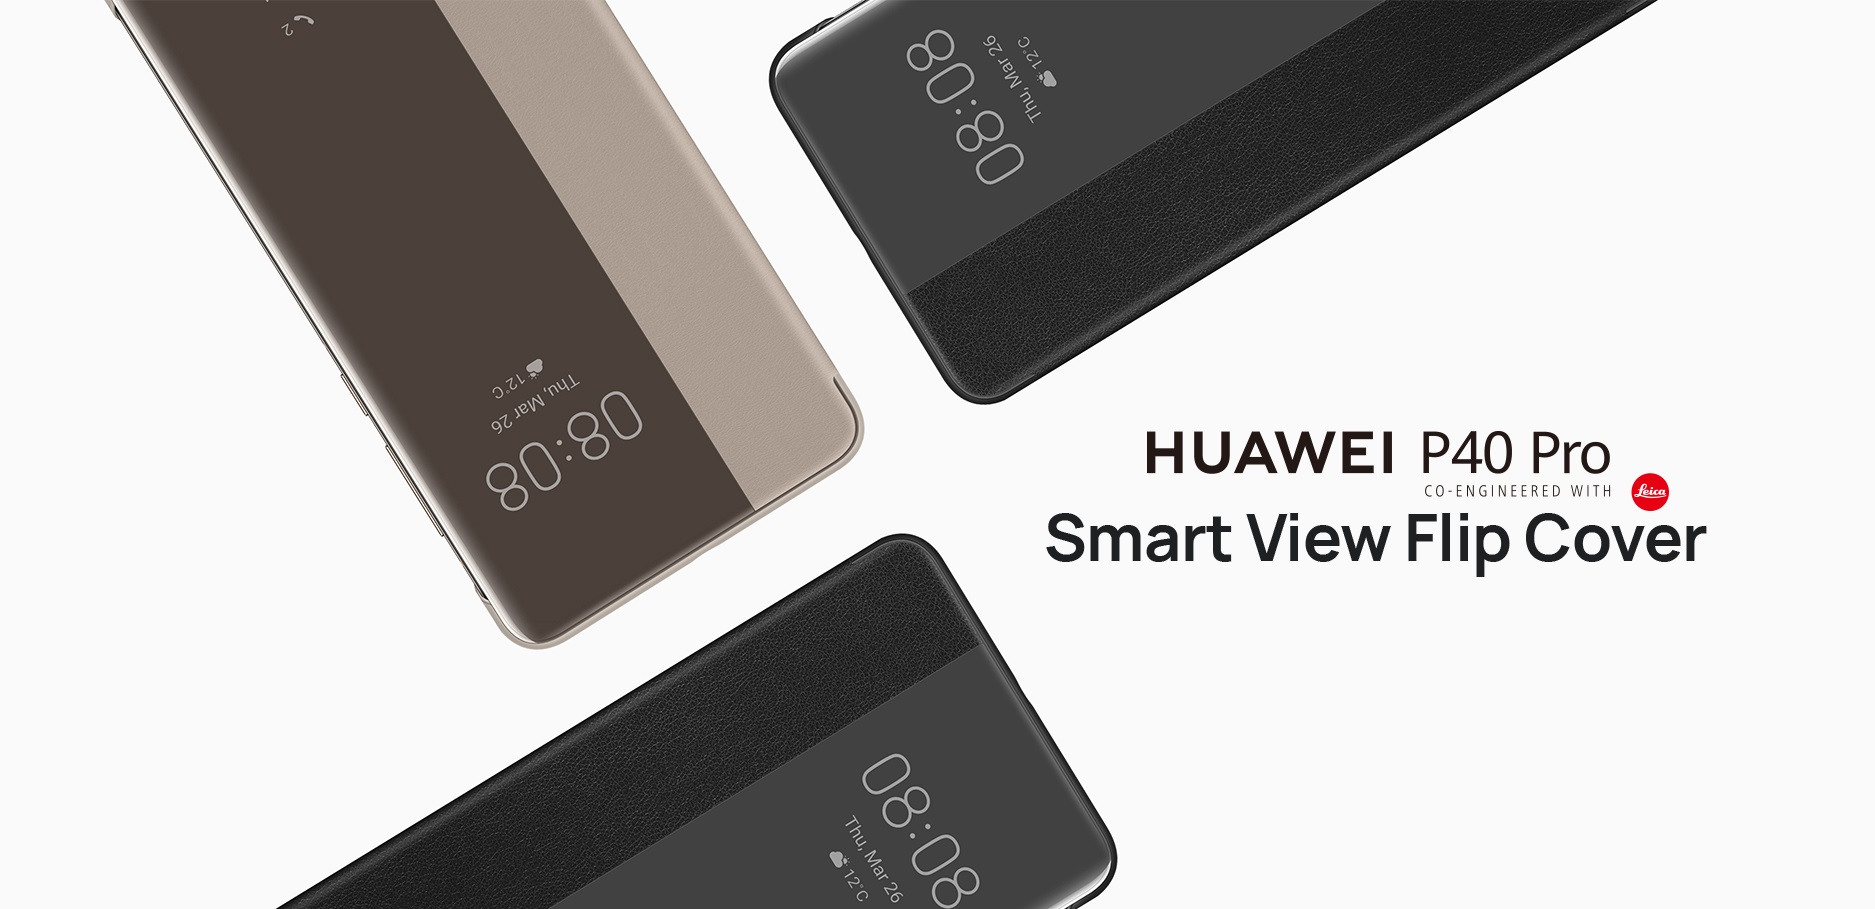 Huawei_P40_Pro_Smart_View_Flip_Cover-01.jpg